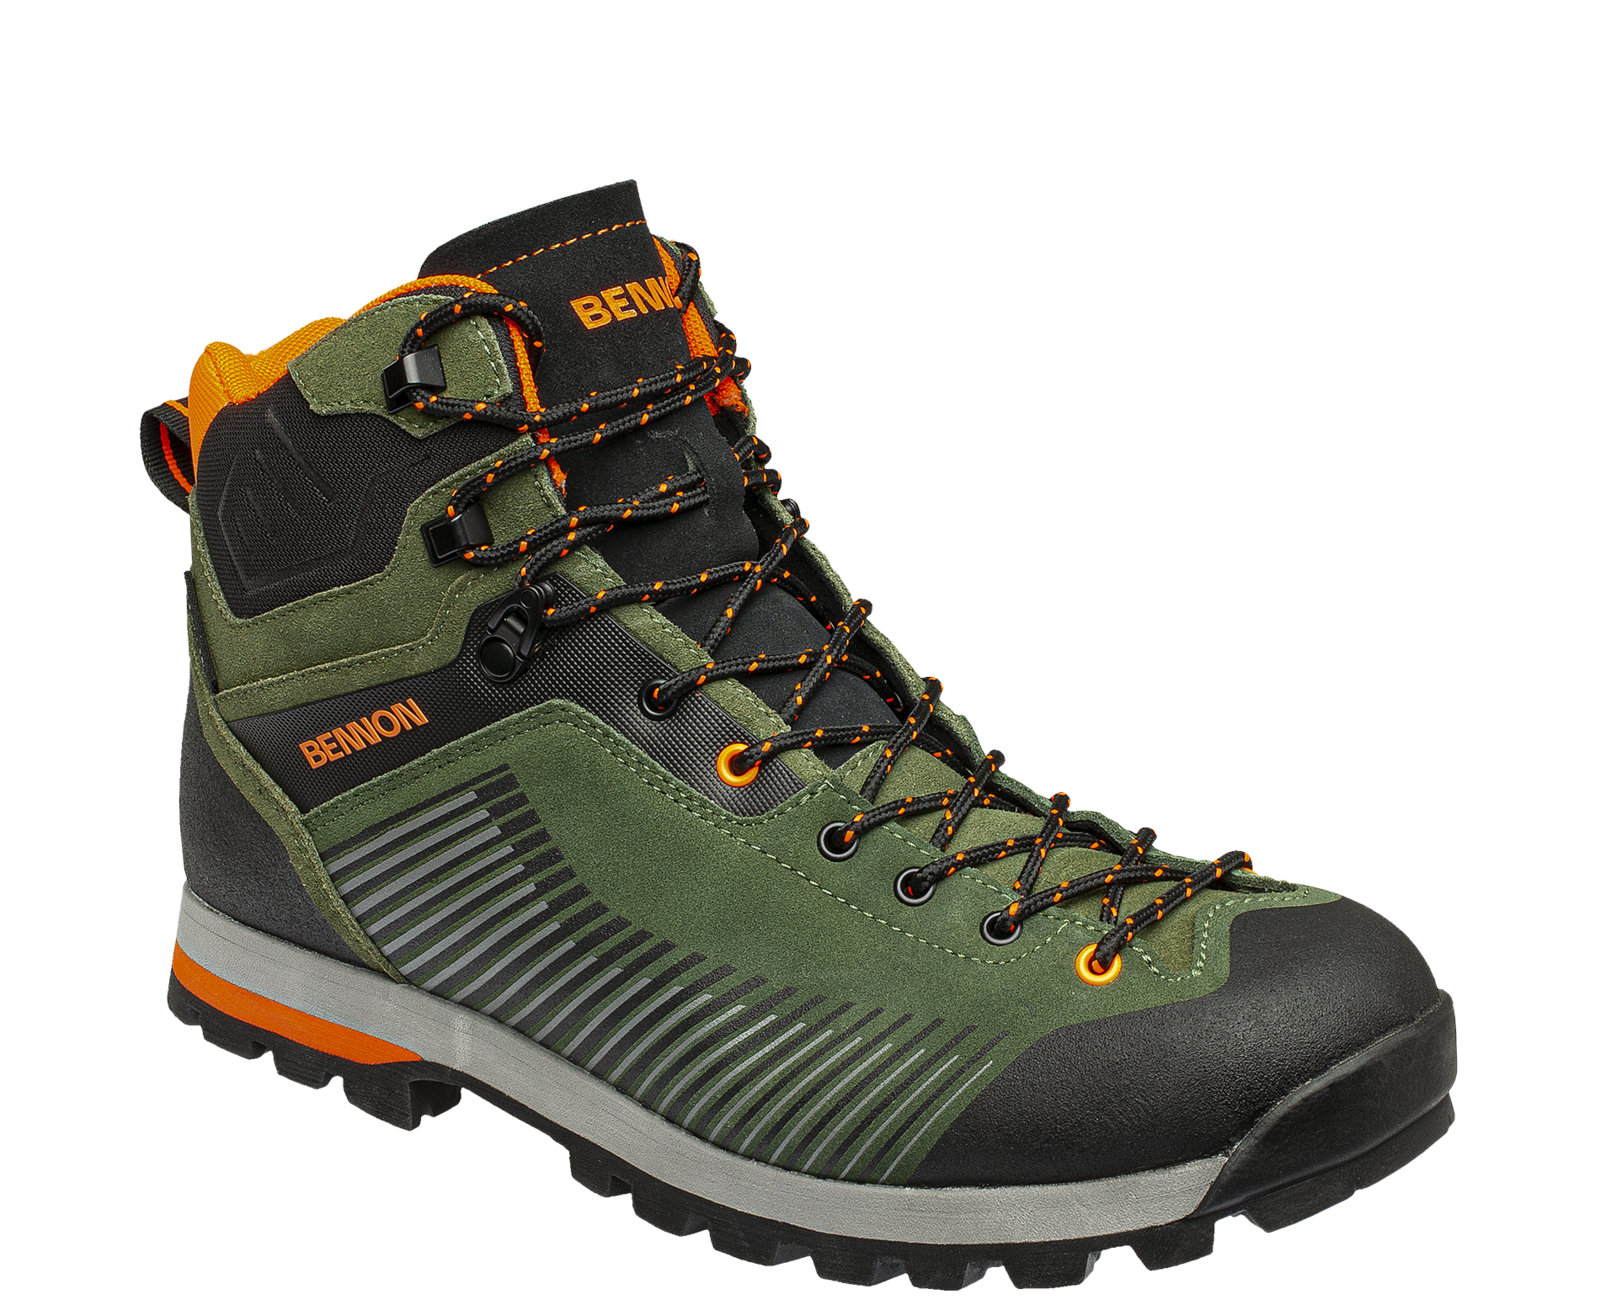 Kožená členková obuv s membránou Bennon Peak Green High - veľkosť: 44, farba: khaki/oranžová